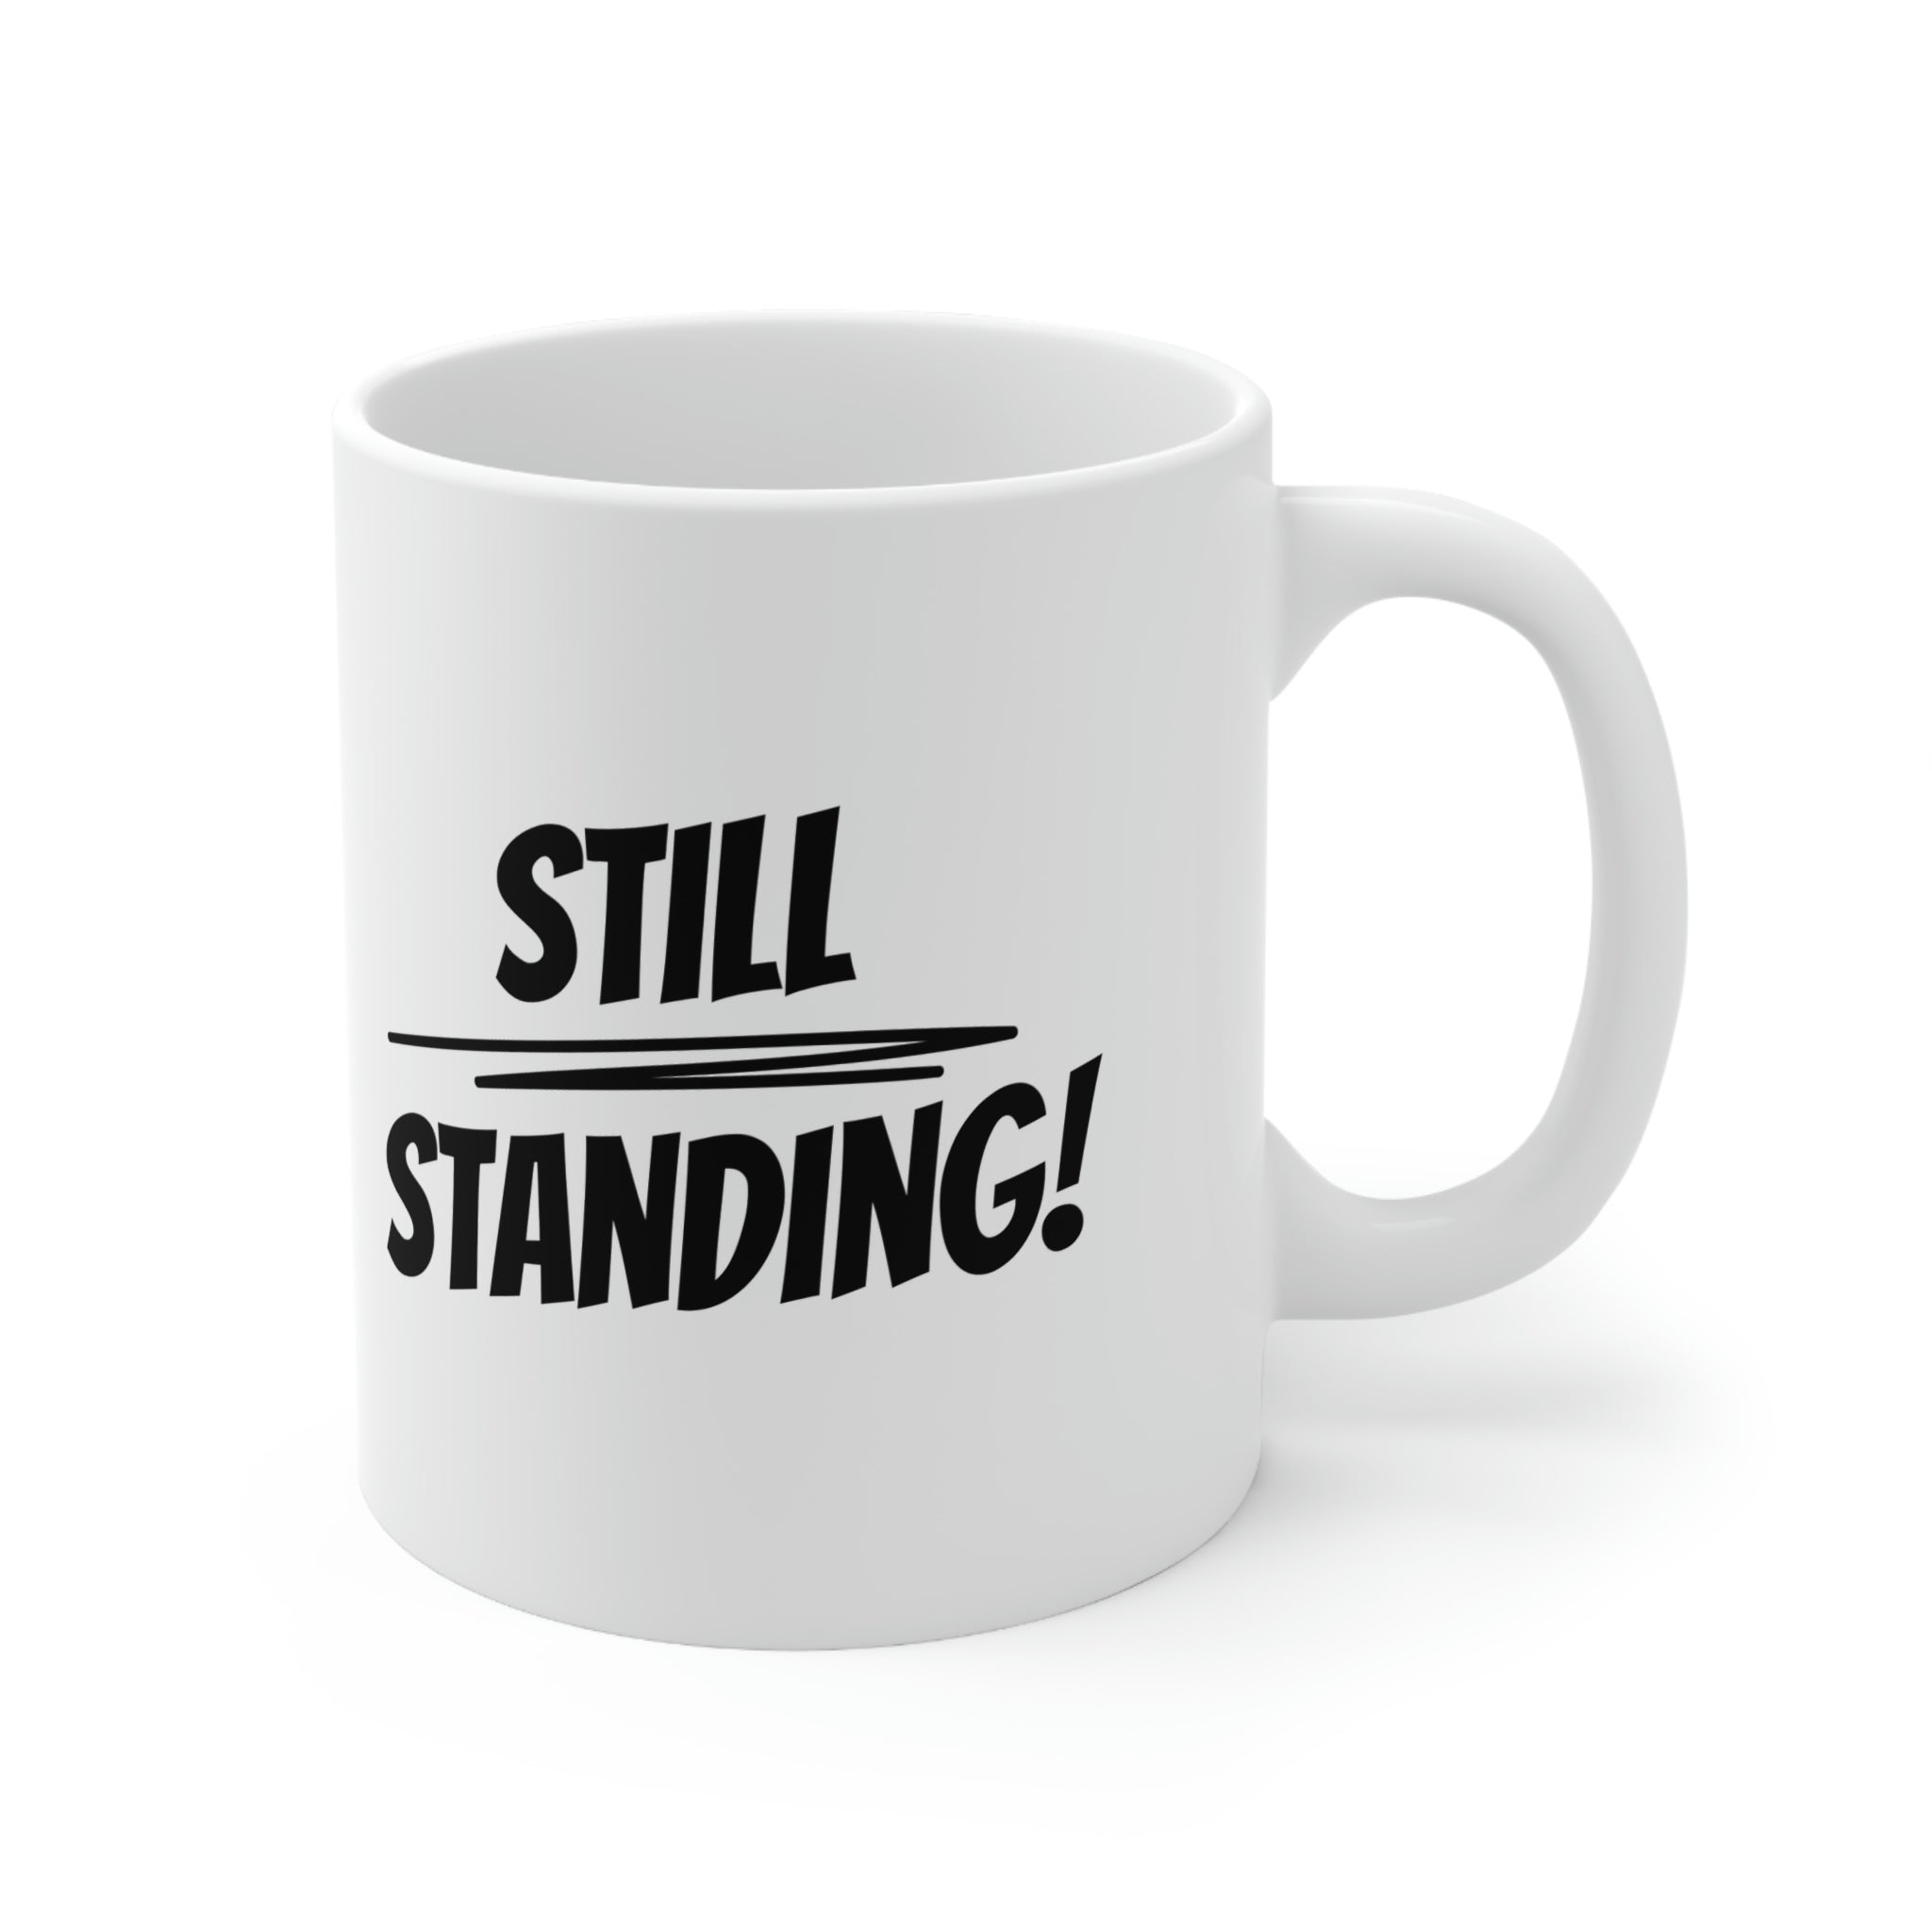 Still Standing Ceramic Mug 11oz